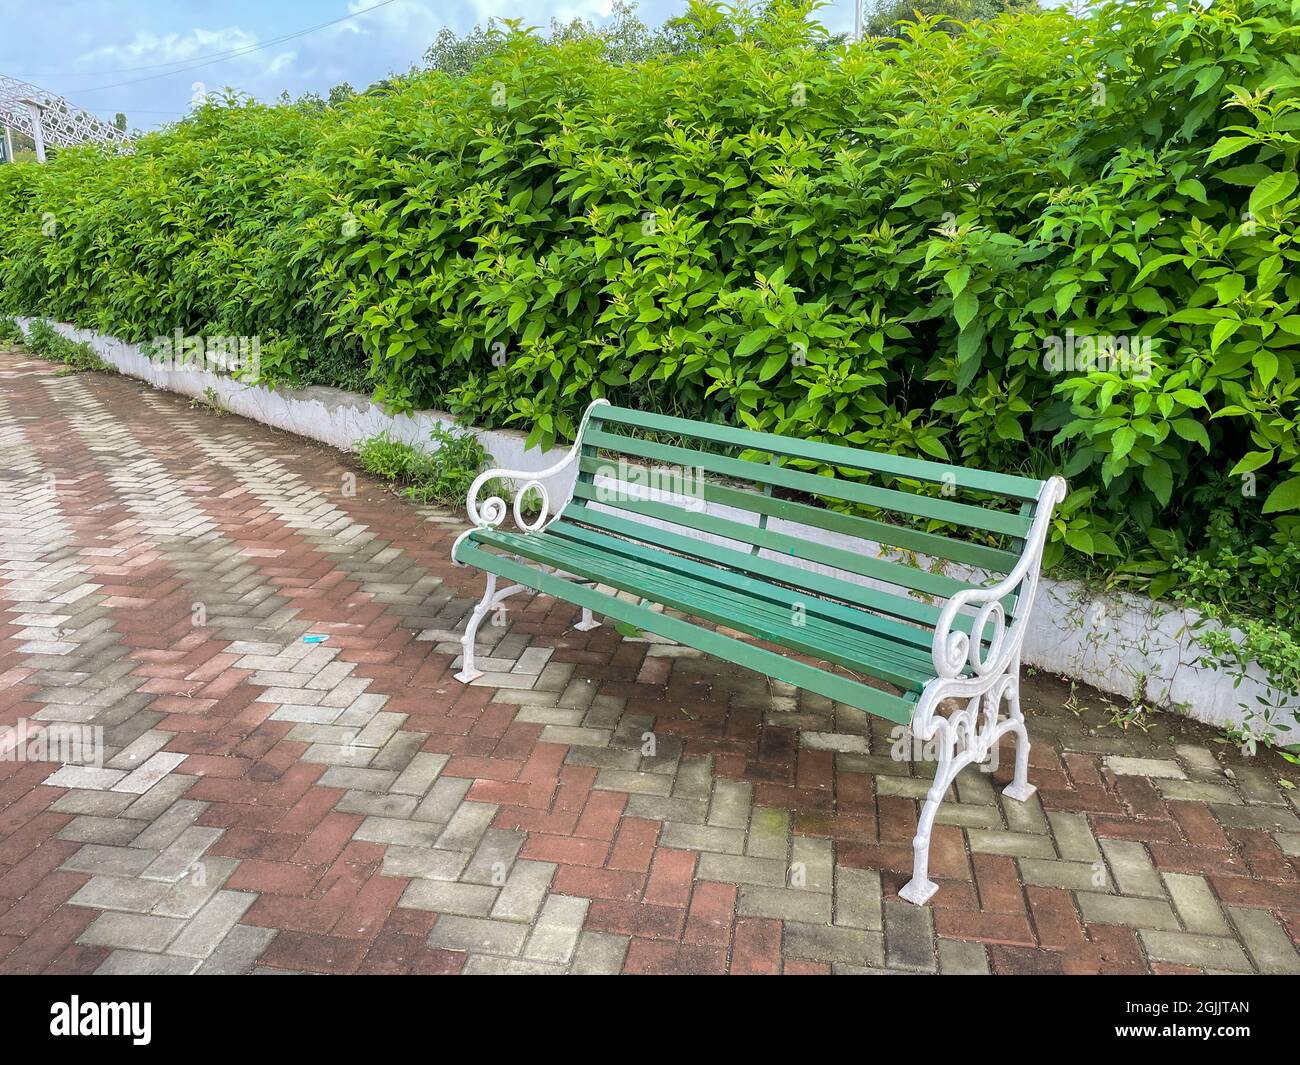 Eine schöne, grün und weiß lackierte Bank, die in einem Park mit einer ruhigen und grünen Umgebung platziert ist Stockfoto